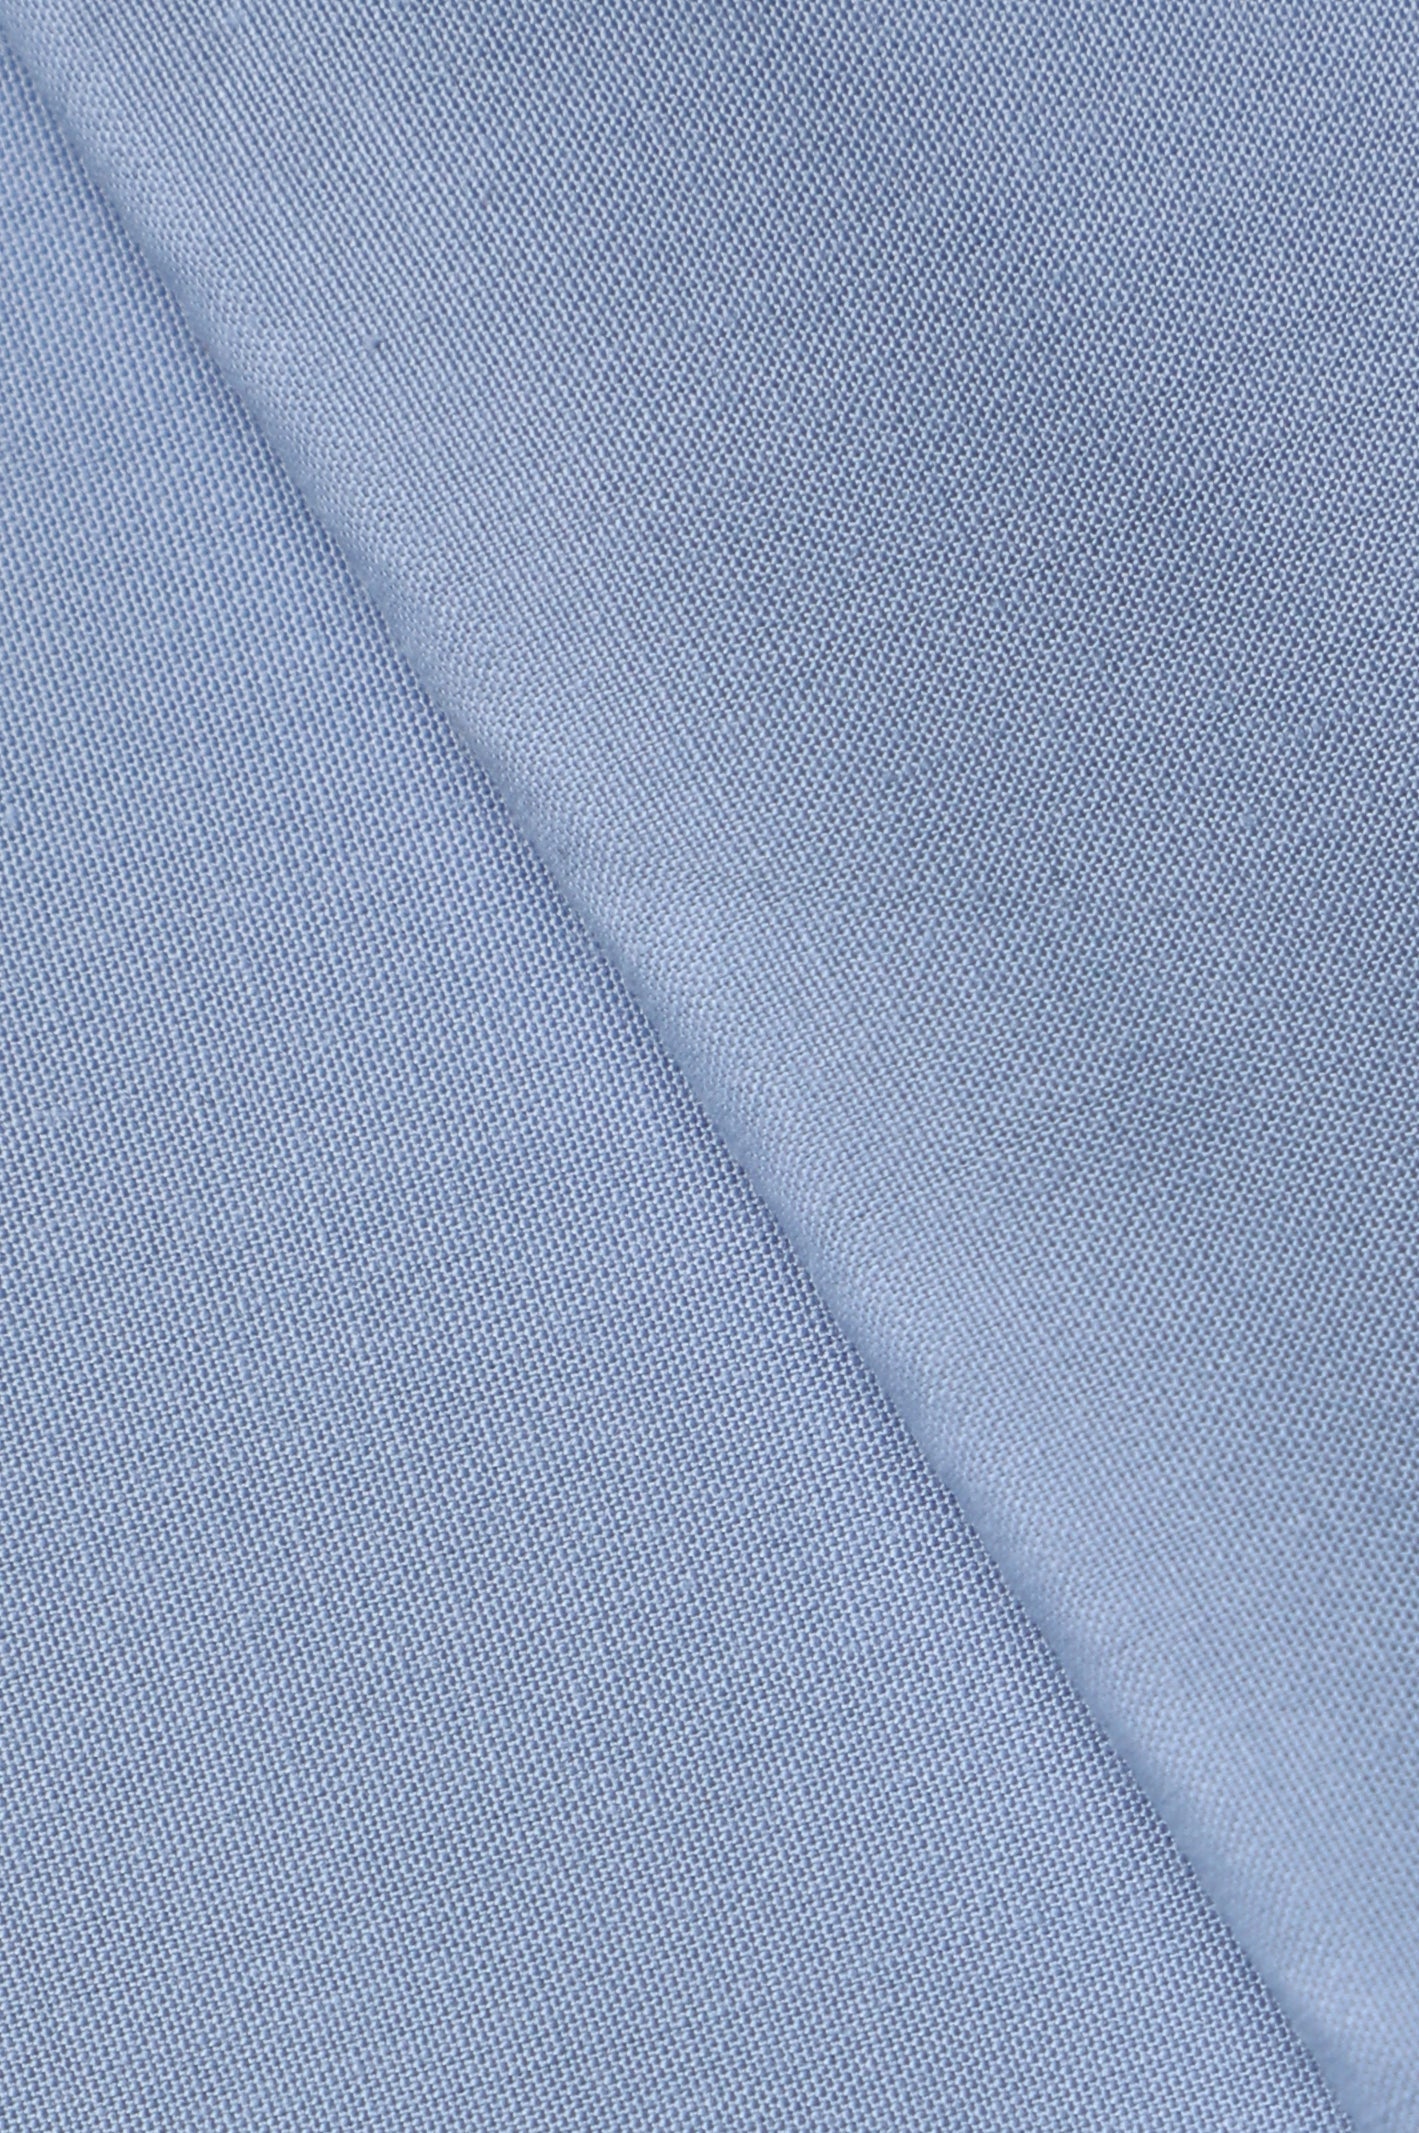 Blended Unstitched Fabric for Men SKU: US0191-L-BLUE - Diners